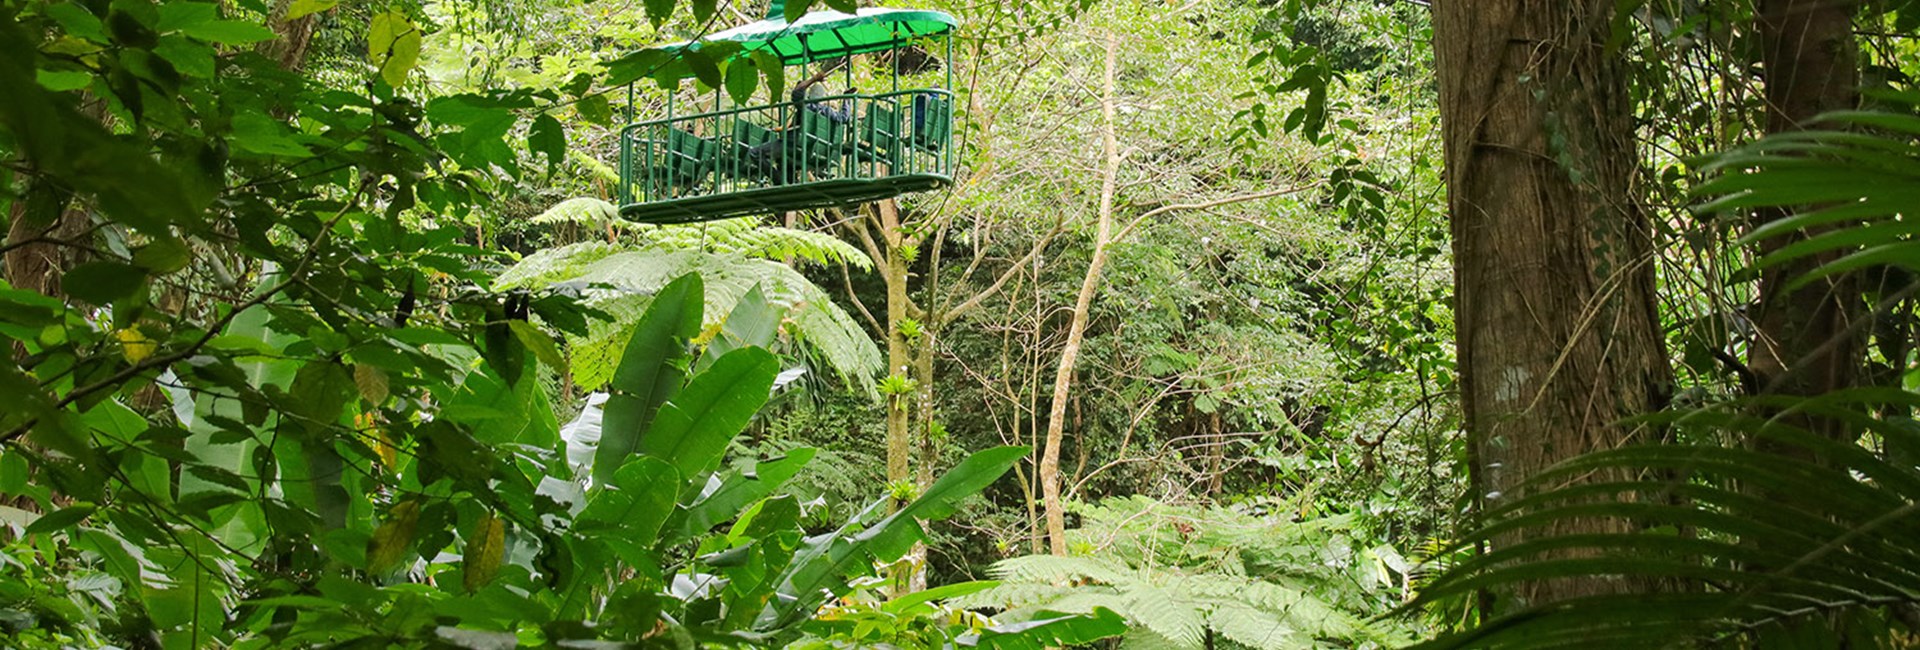 Green tram going through a rainforest